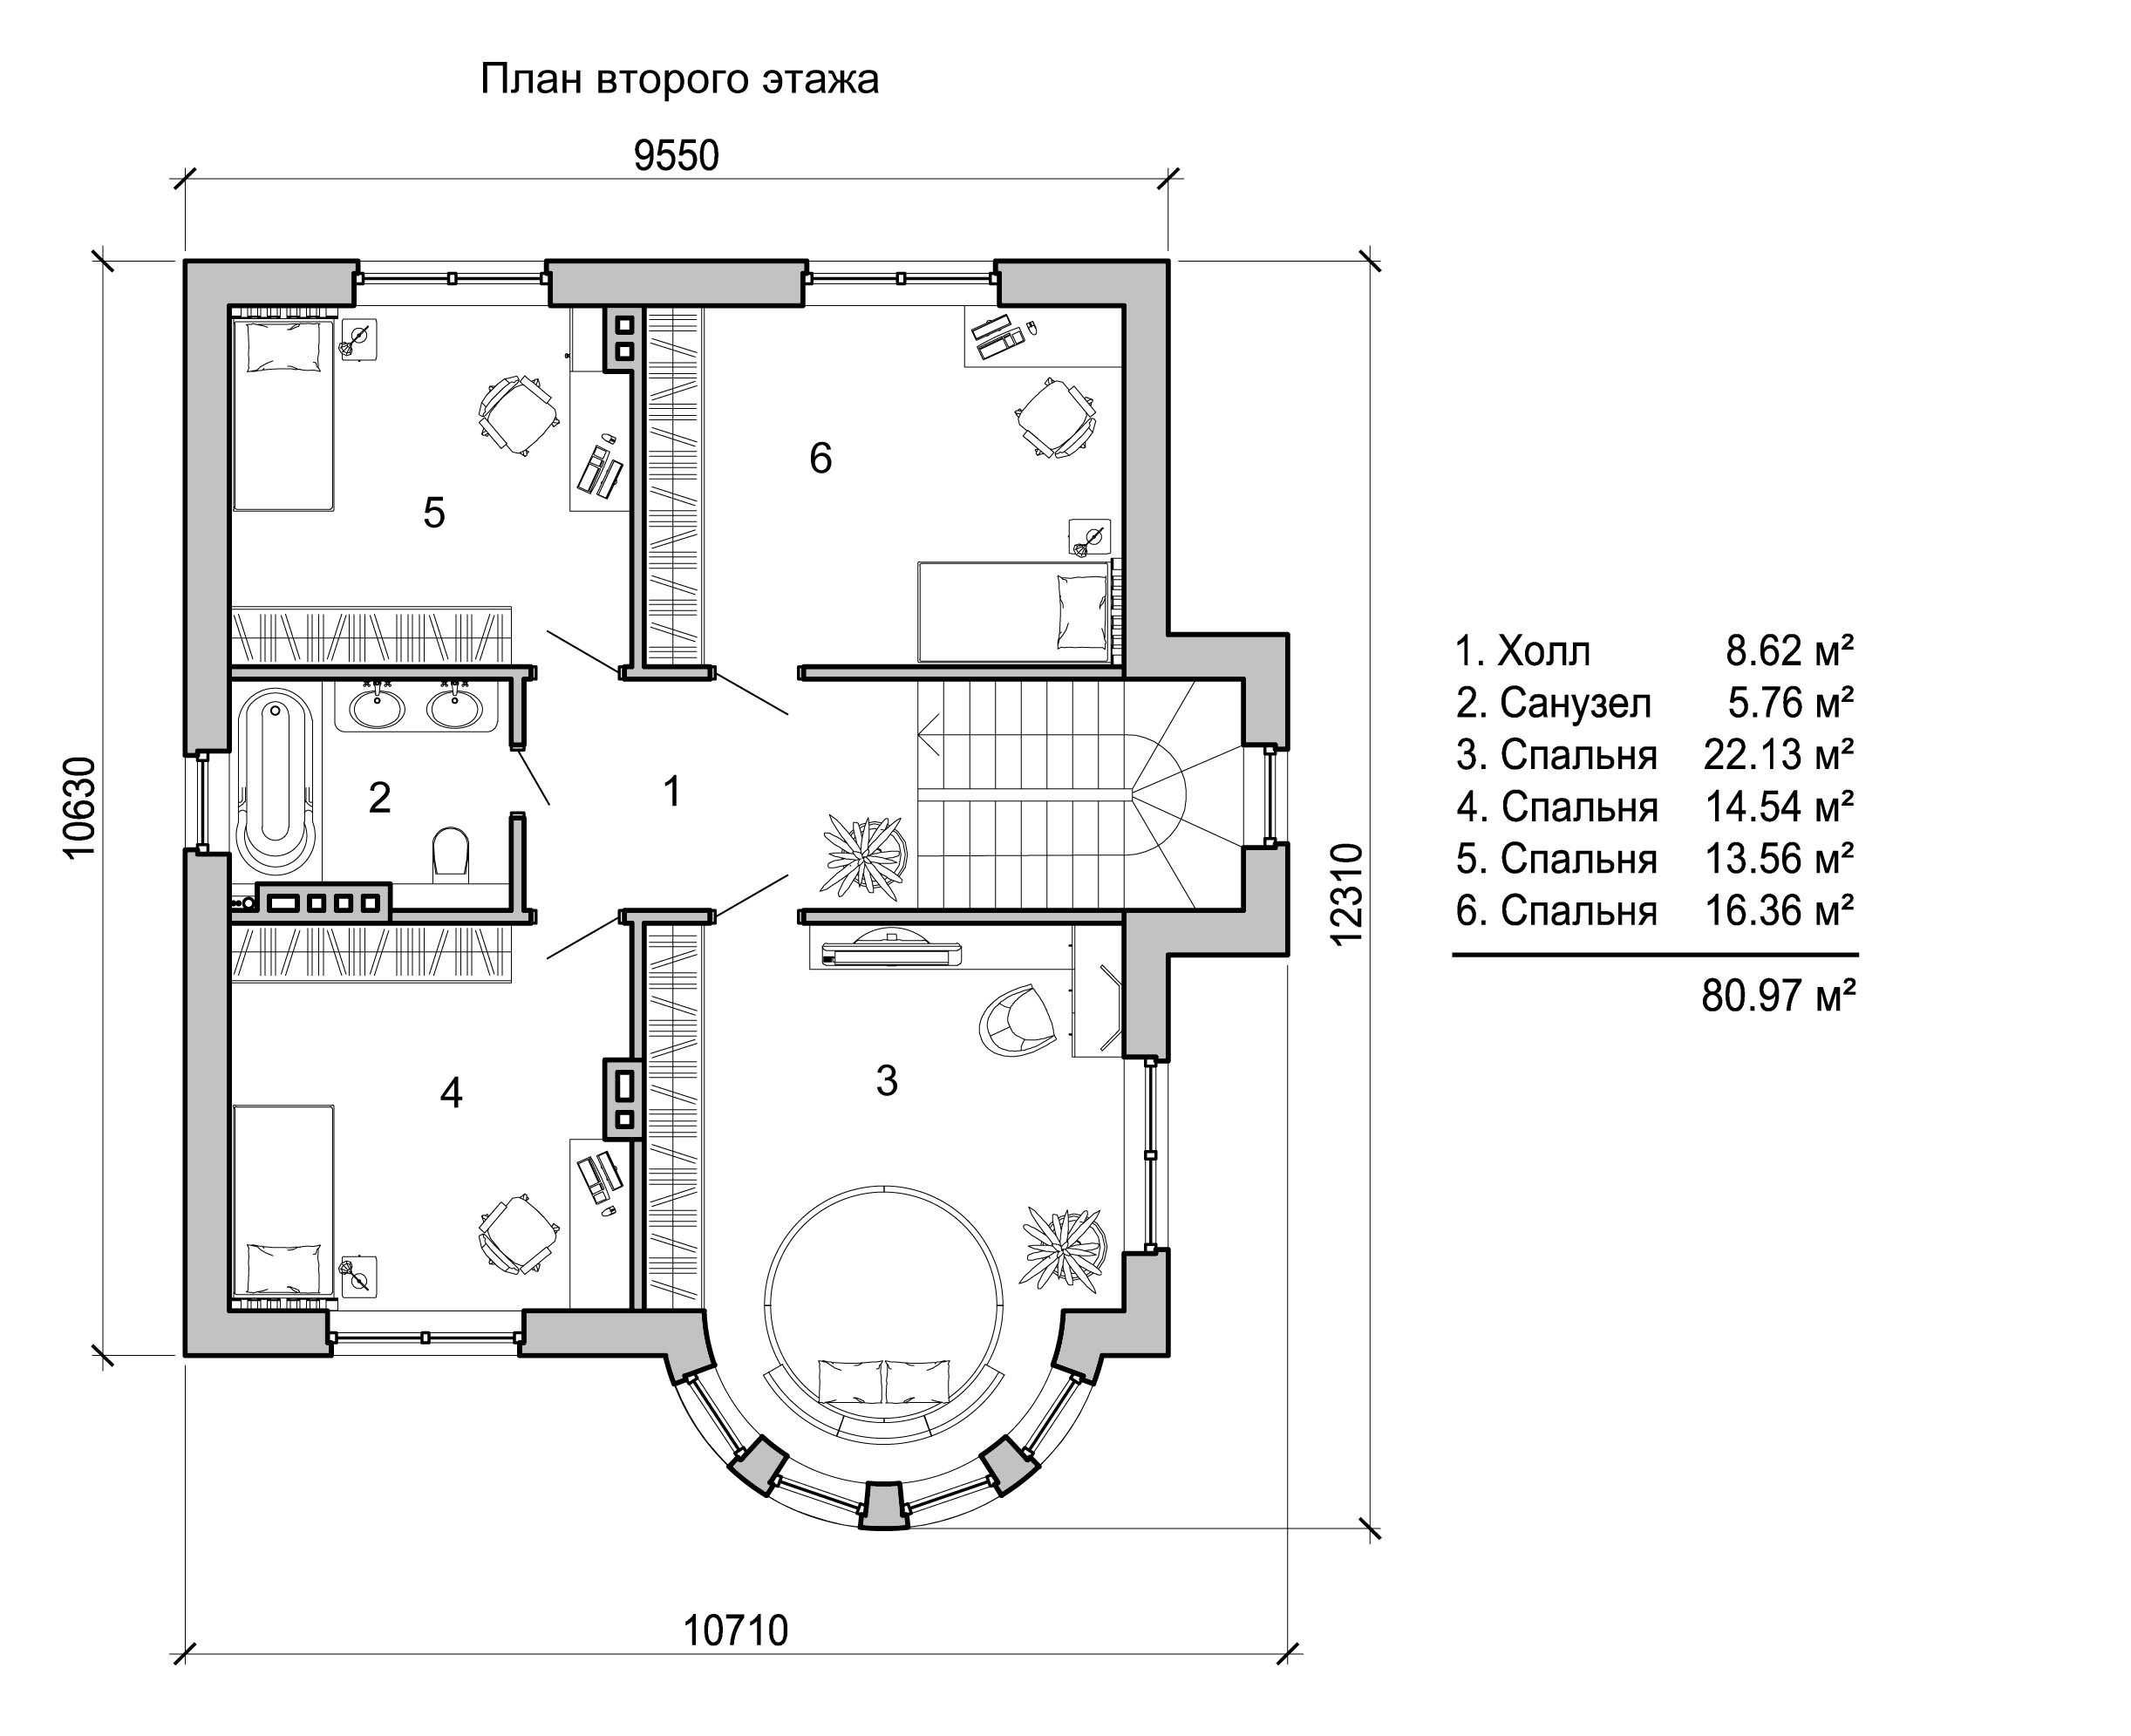 Планы этажей частного дома. Планировка двухэтажного дома из кирпича 1 этаж. План двухэтажного дома чертеж. Чертеж двухэтажного коттеджа с размерами. Схема частного 2 этажного дома.